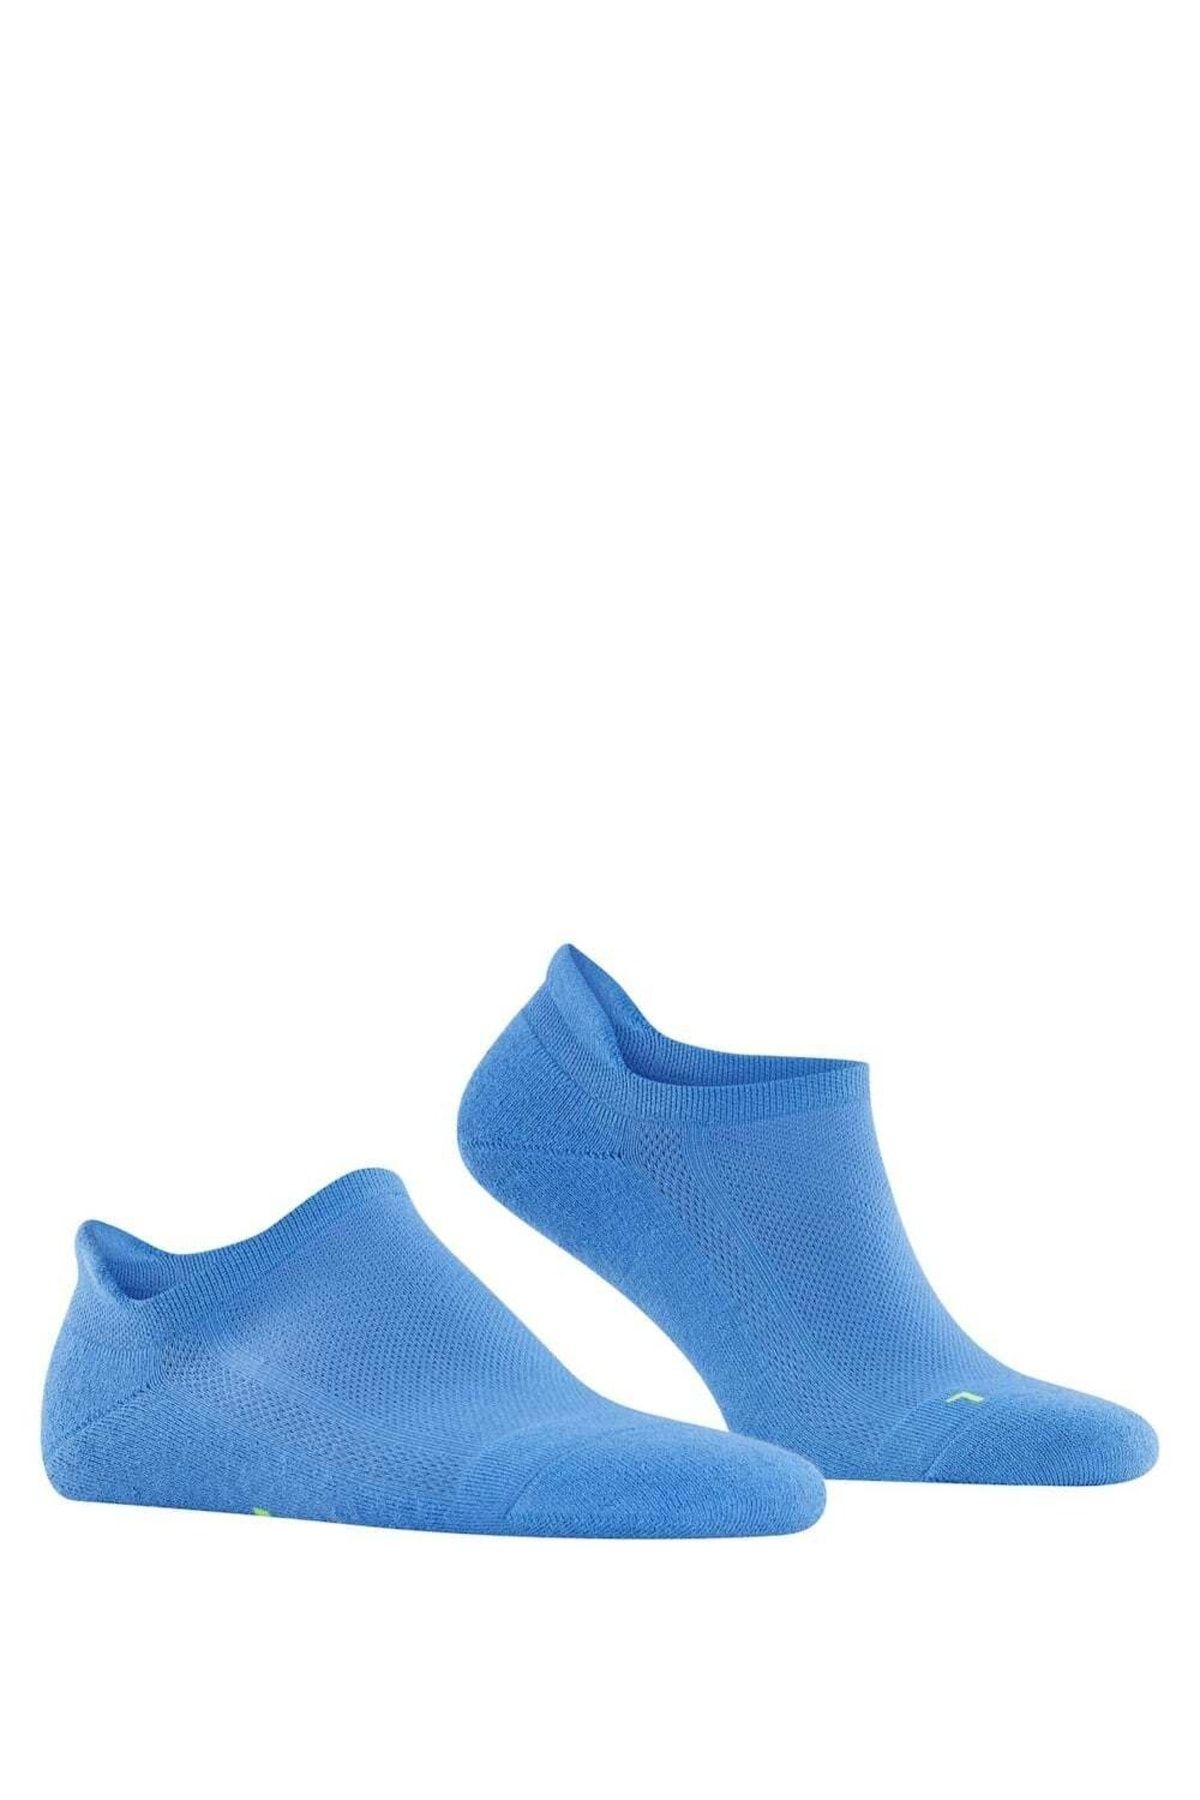 FALKE Unisex Sneakersocken - Cool Kick, Socken, Uni, anatomisch,  ultraleicht, 37-48 - Trendyol